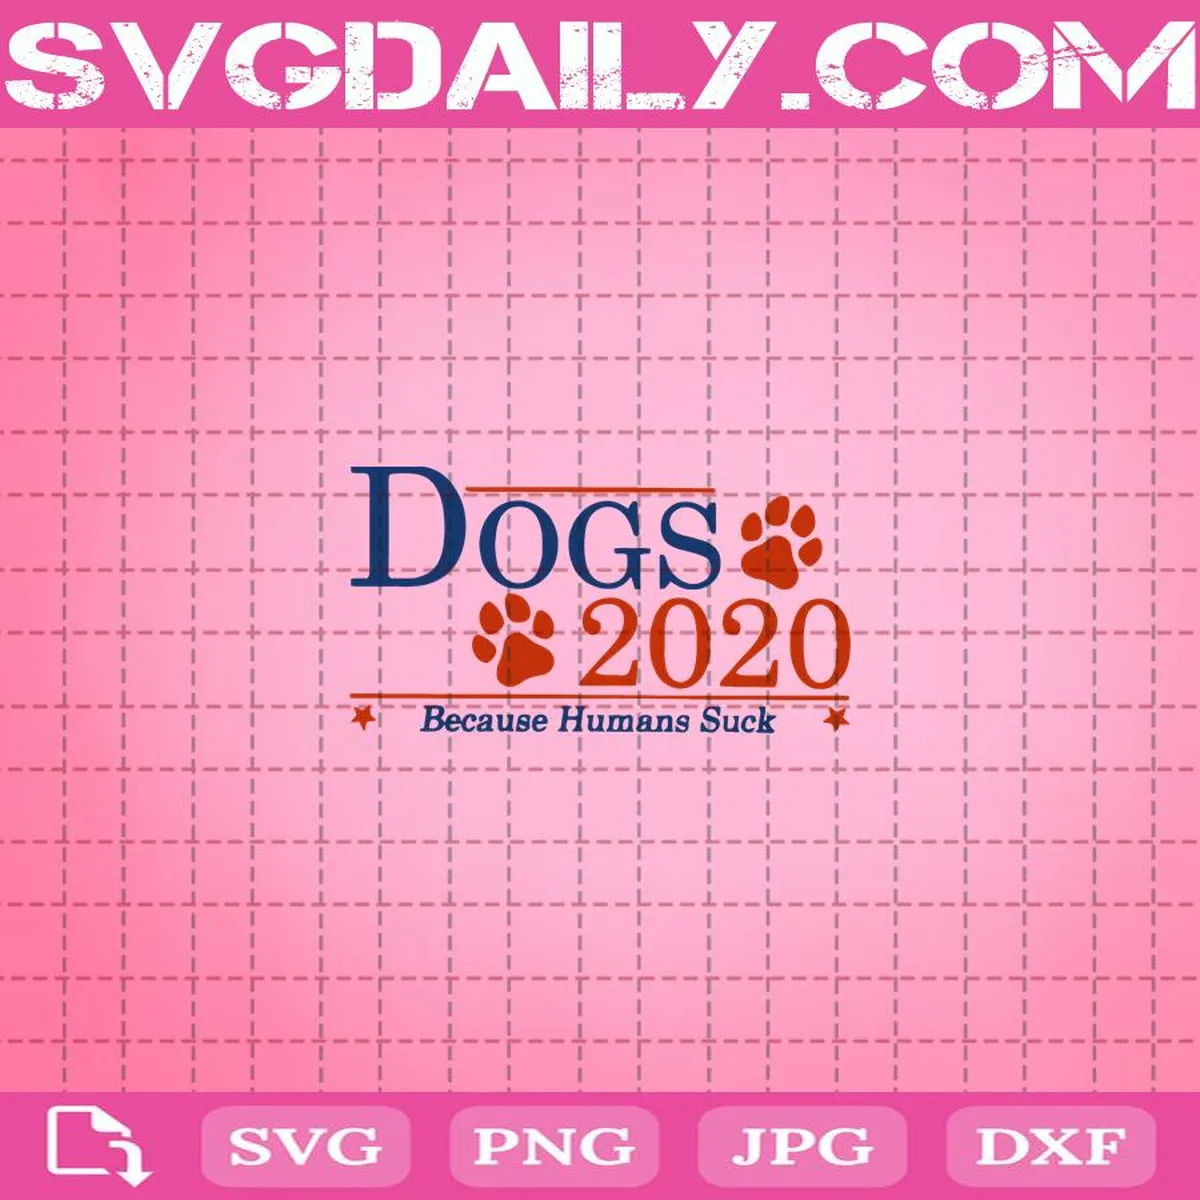 Dogs 2020 Because Humans Suck Svg, Funny Election Political Vote Svg, Dogs 2020 Svg, Vote Svg, Svg Png Dxf Eps